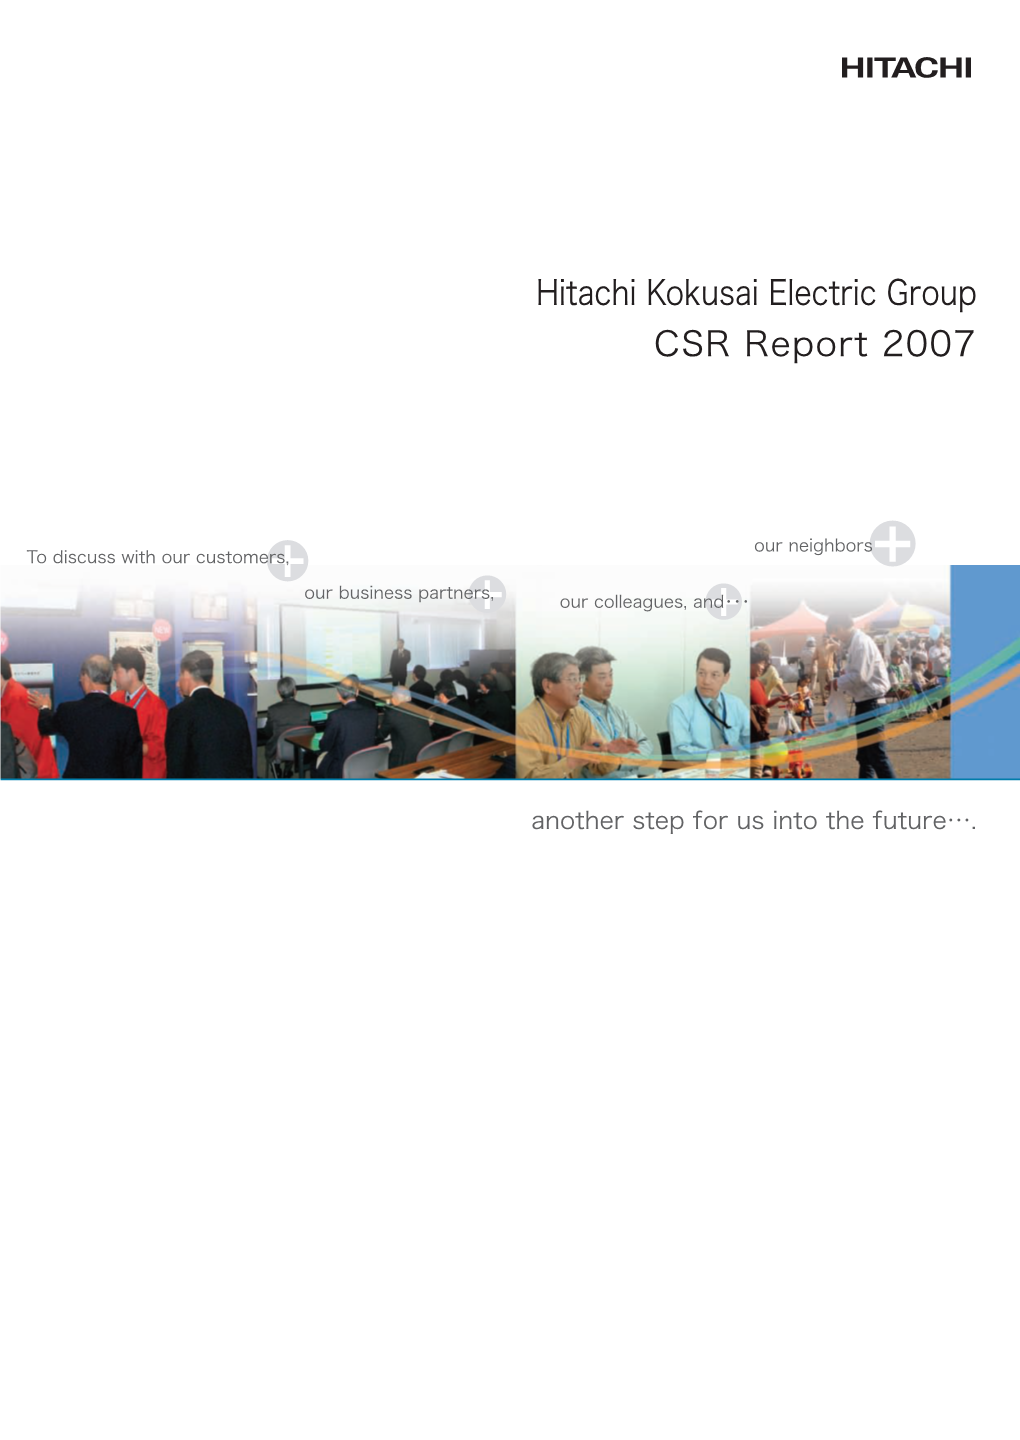 CSR Report 2007 Hitachi Kokusai Electric Group